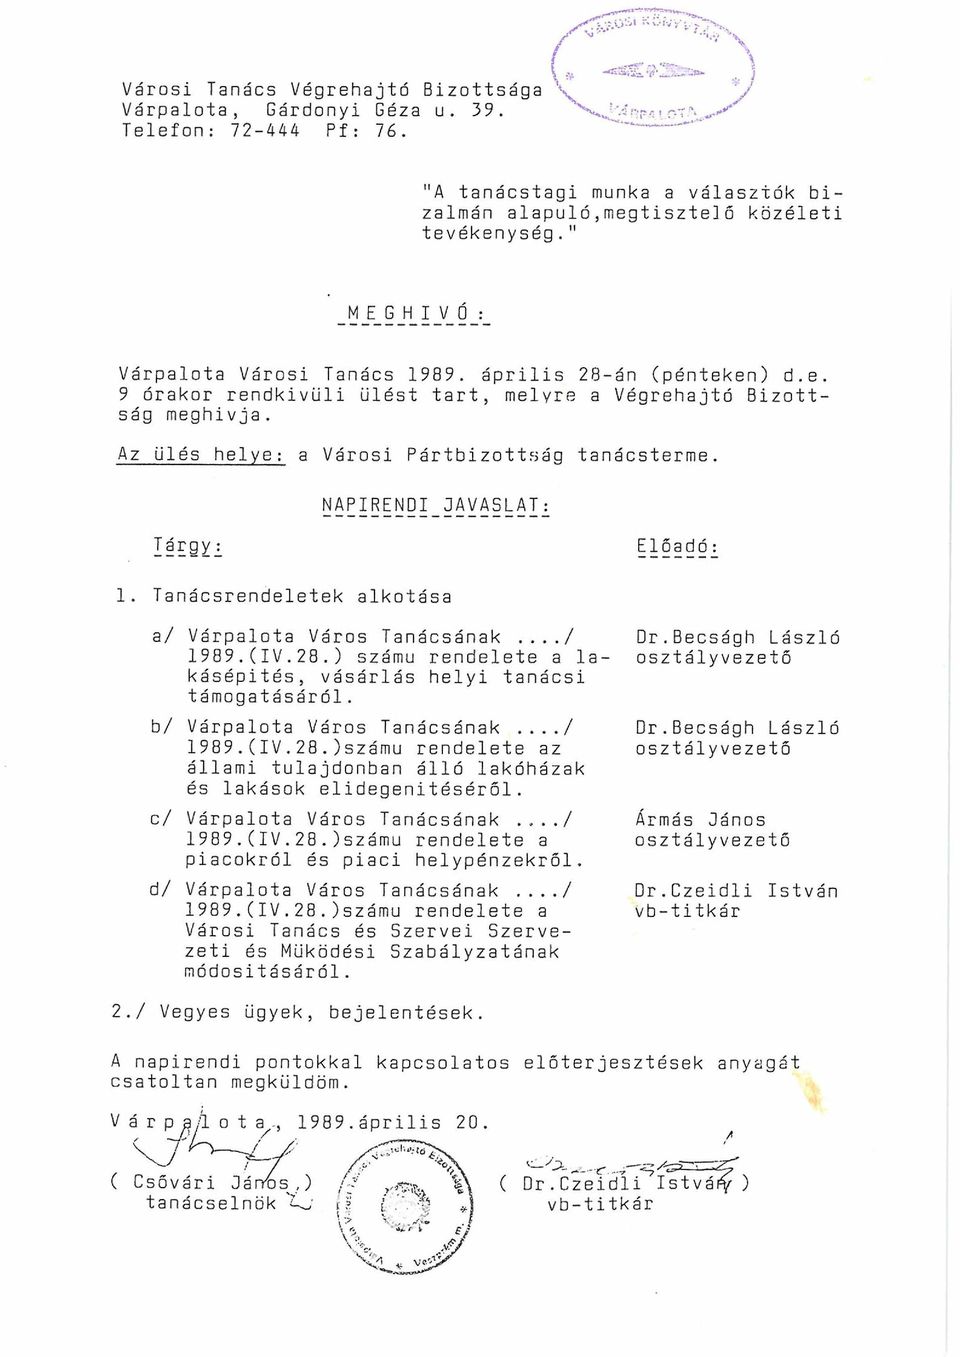 NAPIRENDI JAVASLAT: Tárgy : Előadó 1. Tanácsrendeletek alkotása a/ Várpalota Város Tanácsának.../ 1989.(IV.28.) számú rendelete a la kásépités, vásárlás helyi tanácsi támogatásáról.